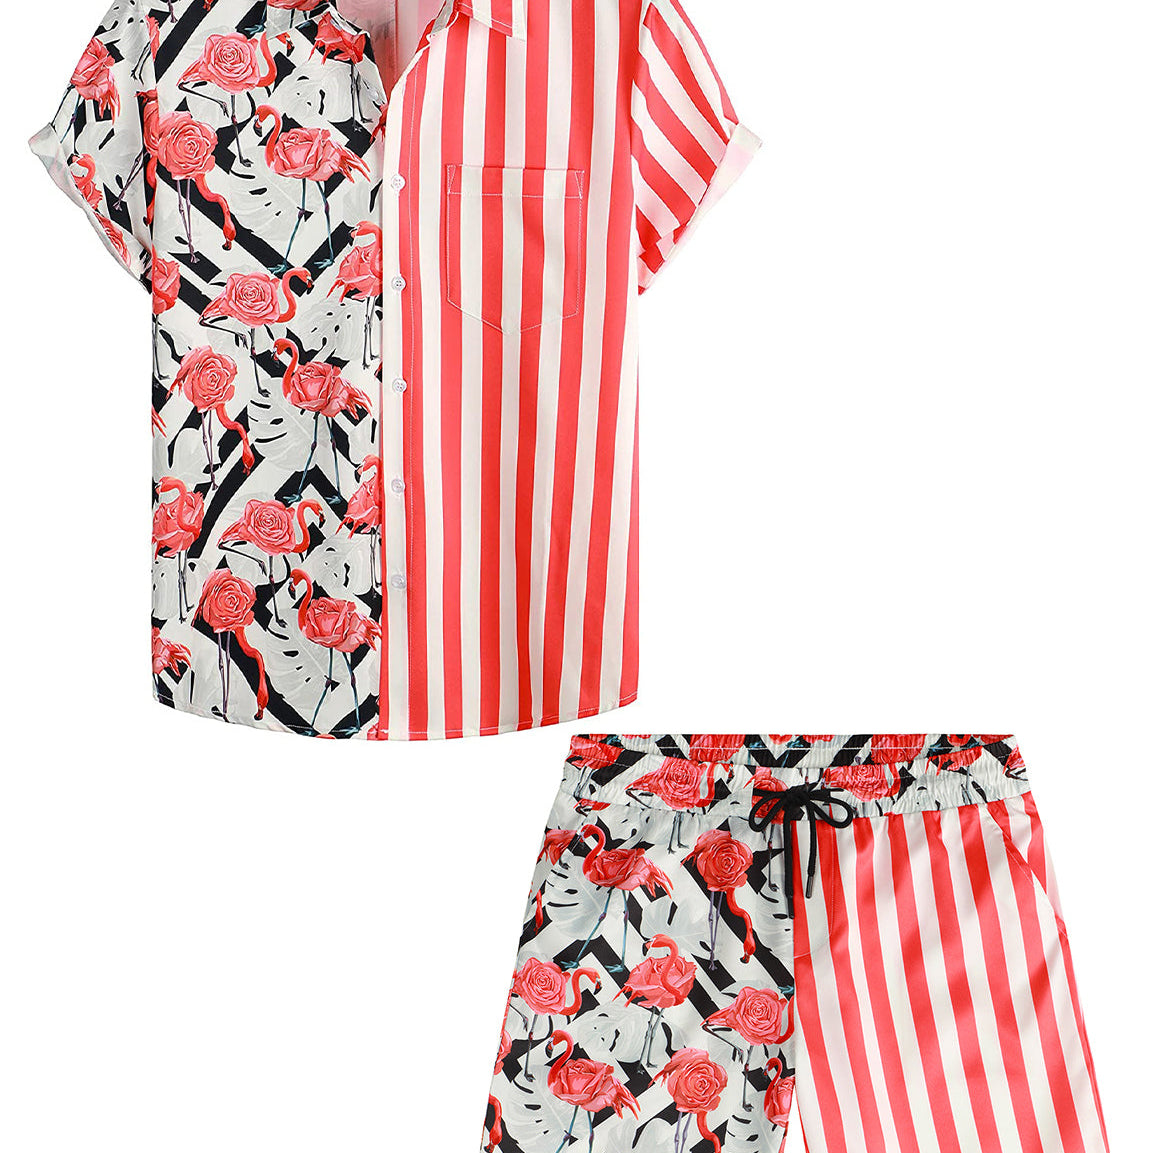 Costume de poche 2 pièces pour hommes, flamant rose et rayures rouges, ensemble chemise et short hawaïen